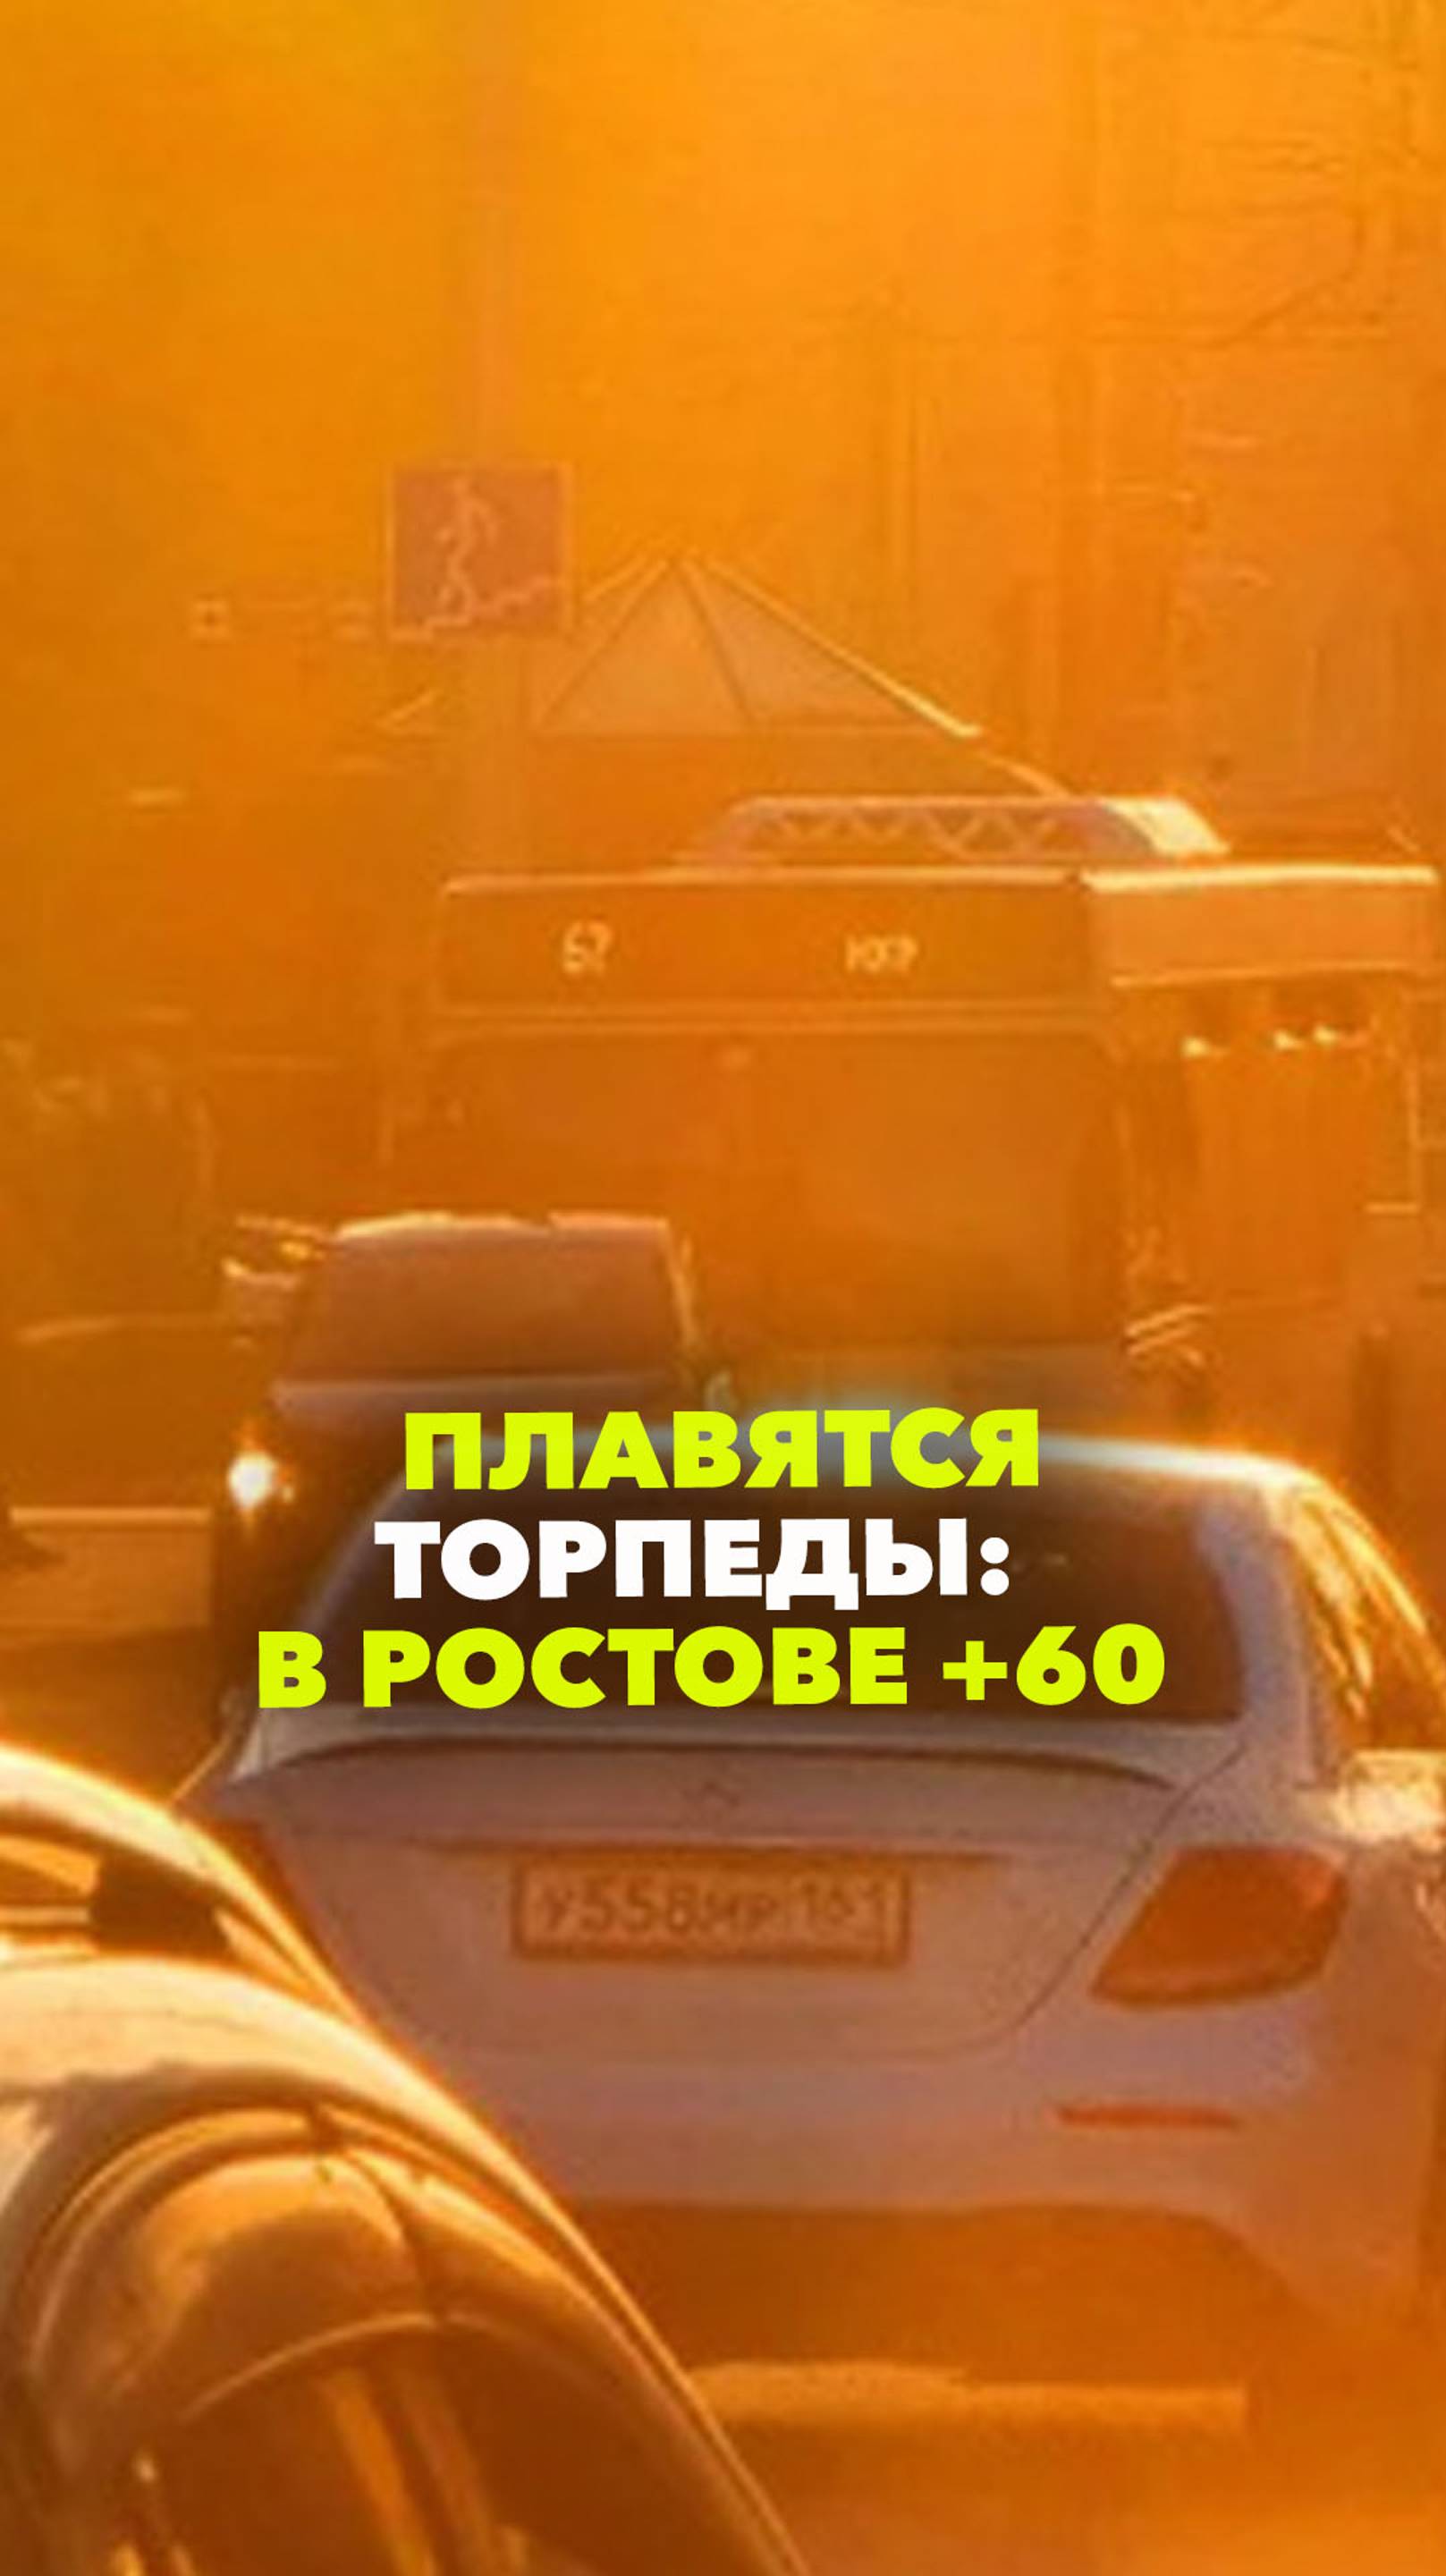 Перегреваются и плавятся торпеды машин: в Ростове +60, и это не предел